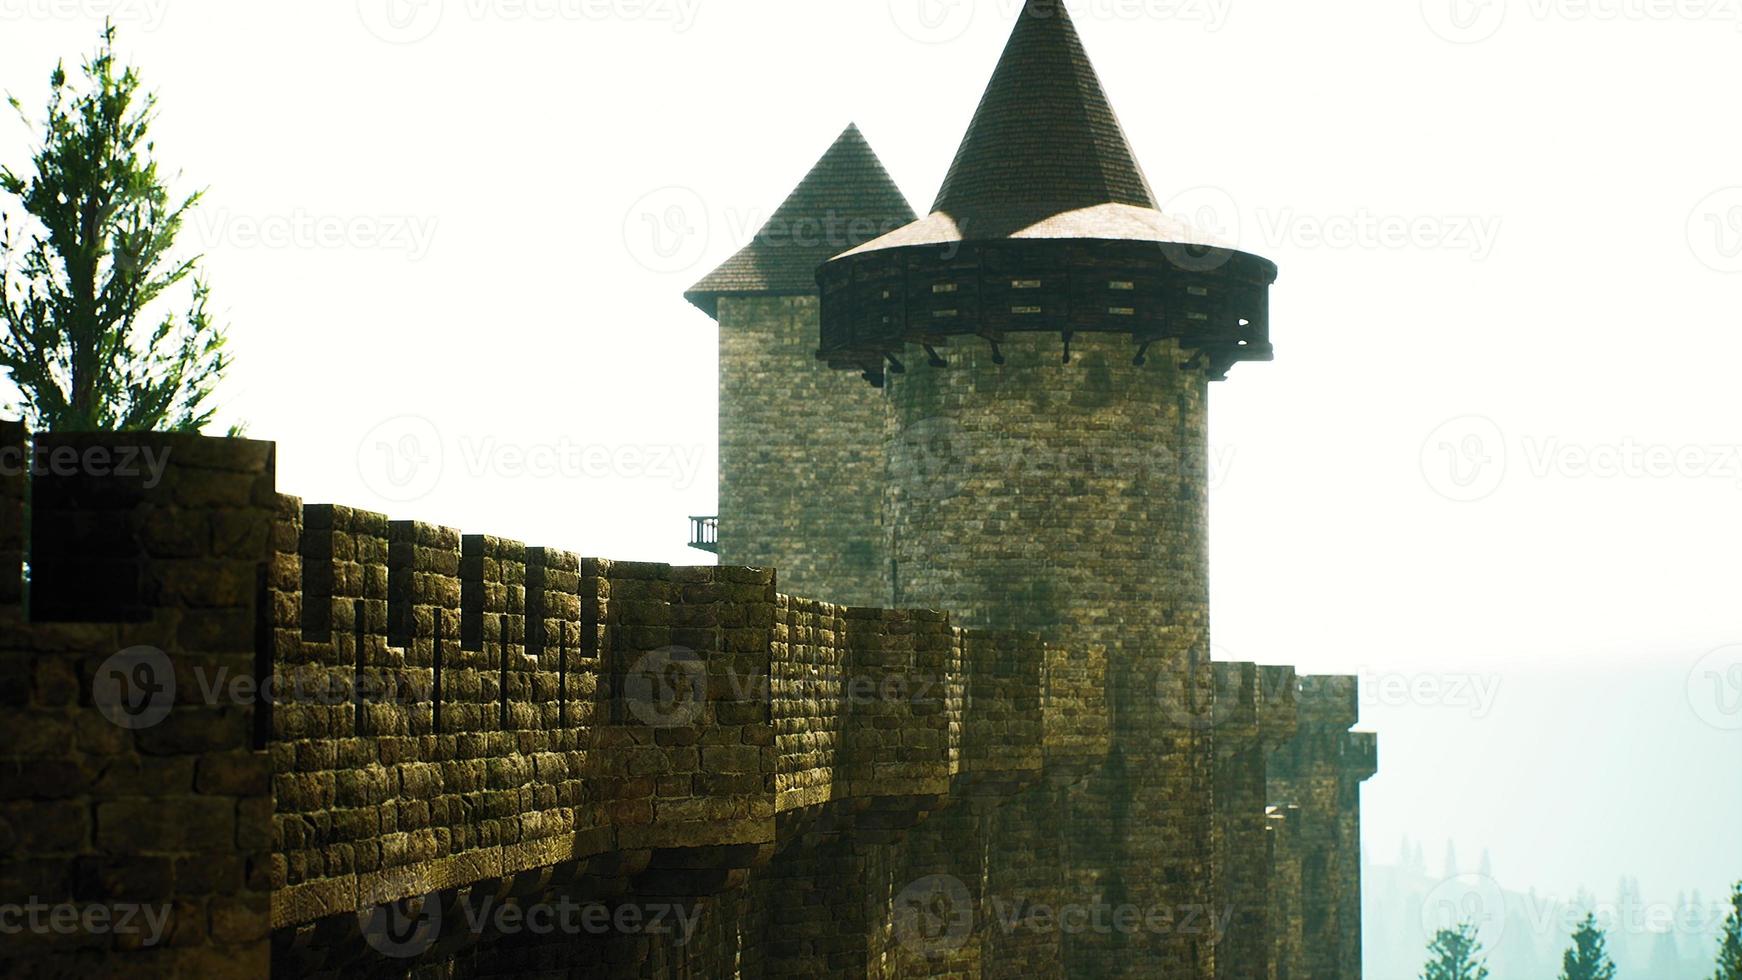 antiguas murallas del castillo al atardecer foto